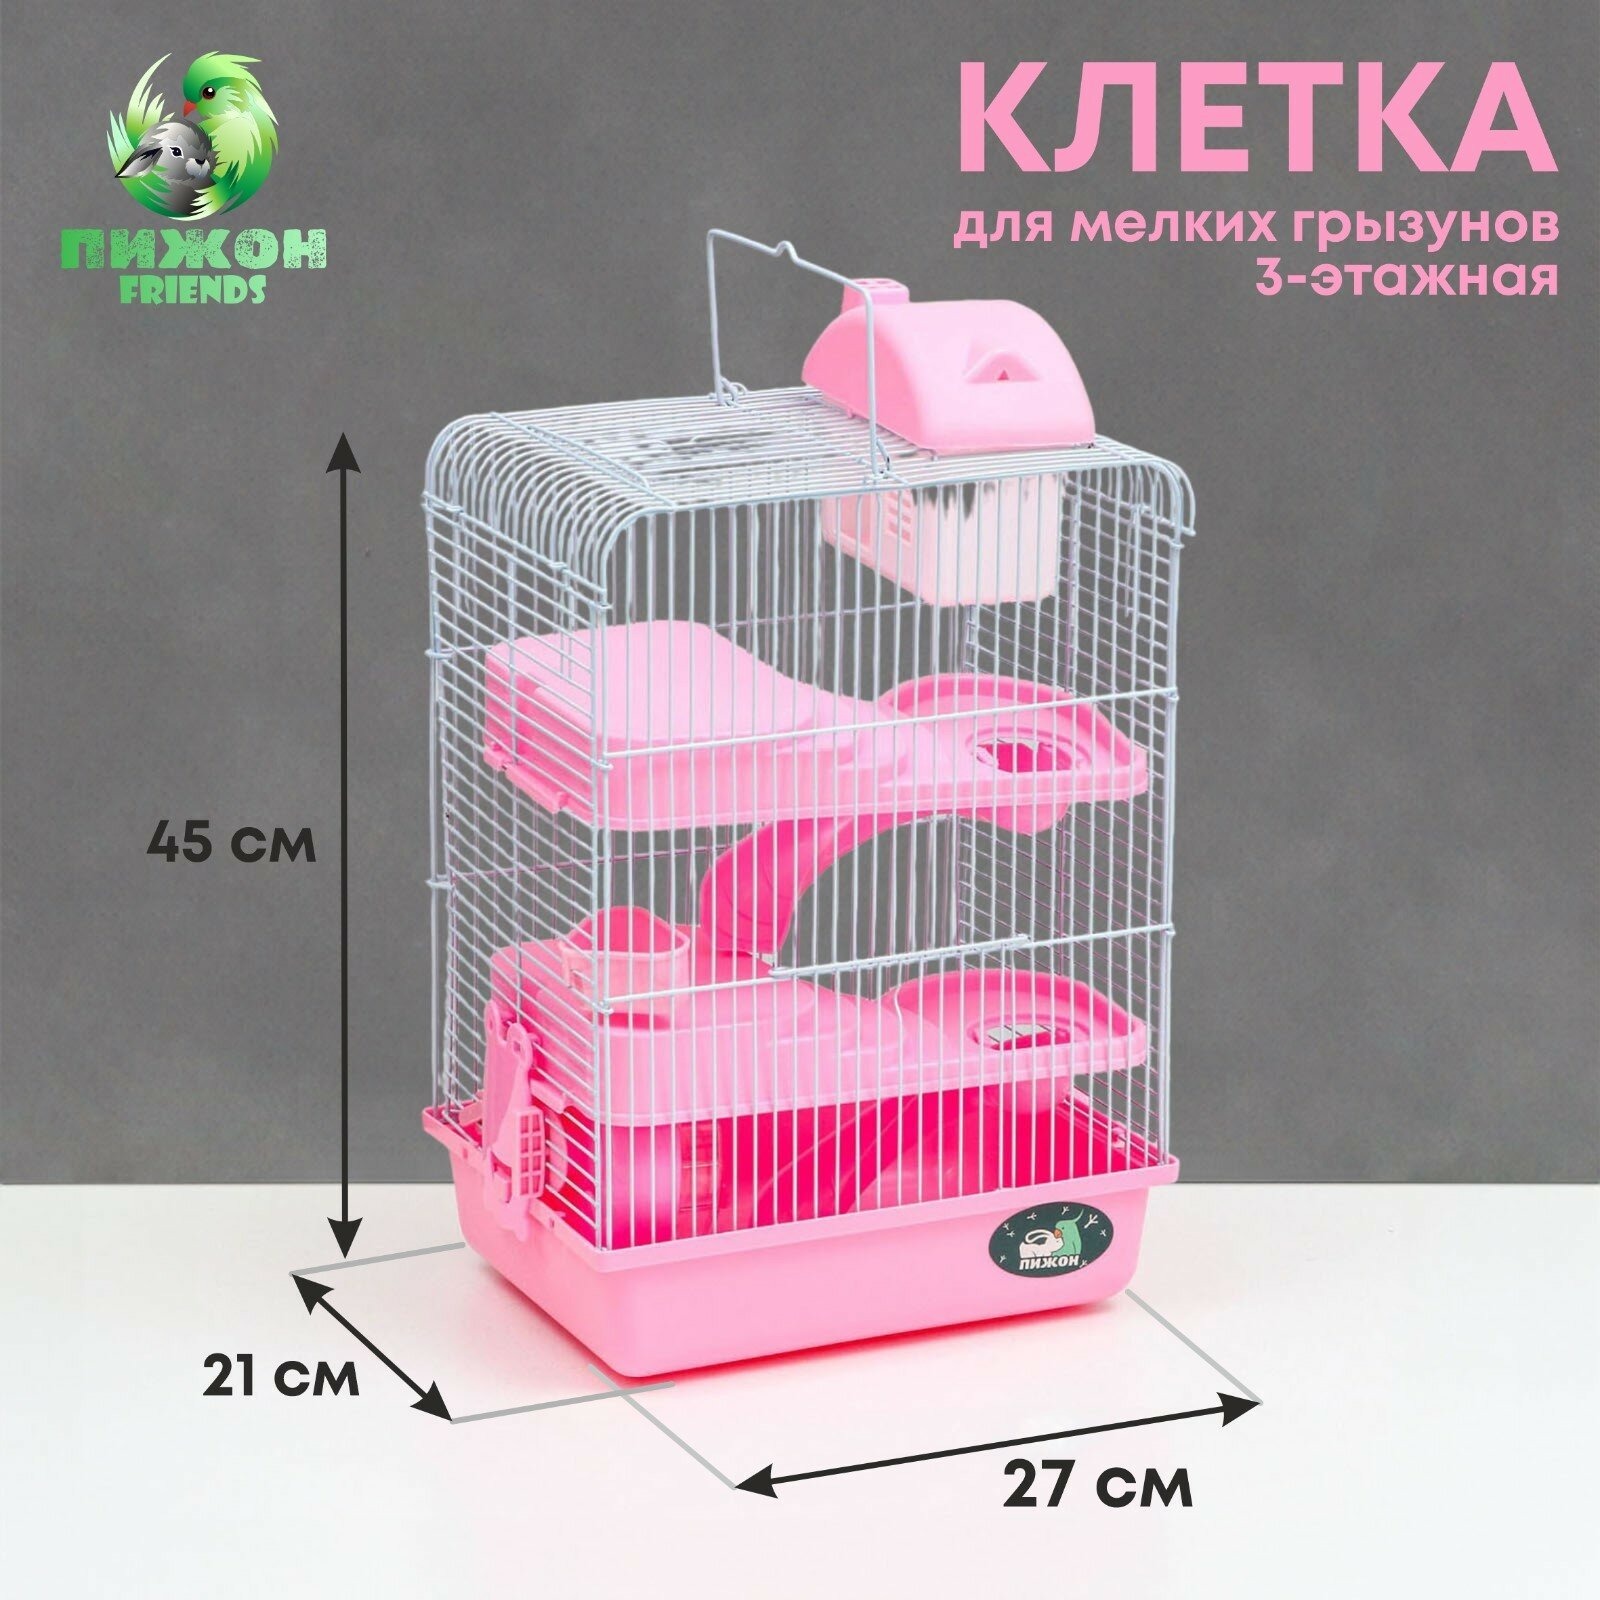 Клетка для мелких грызунов, с наполнением, 27 х 21 х 45 см, розовая